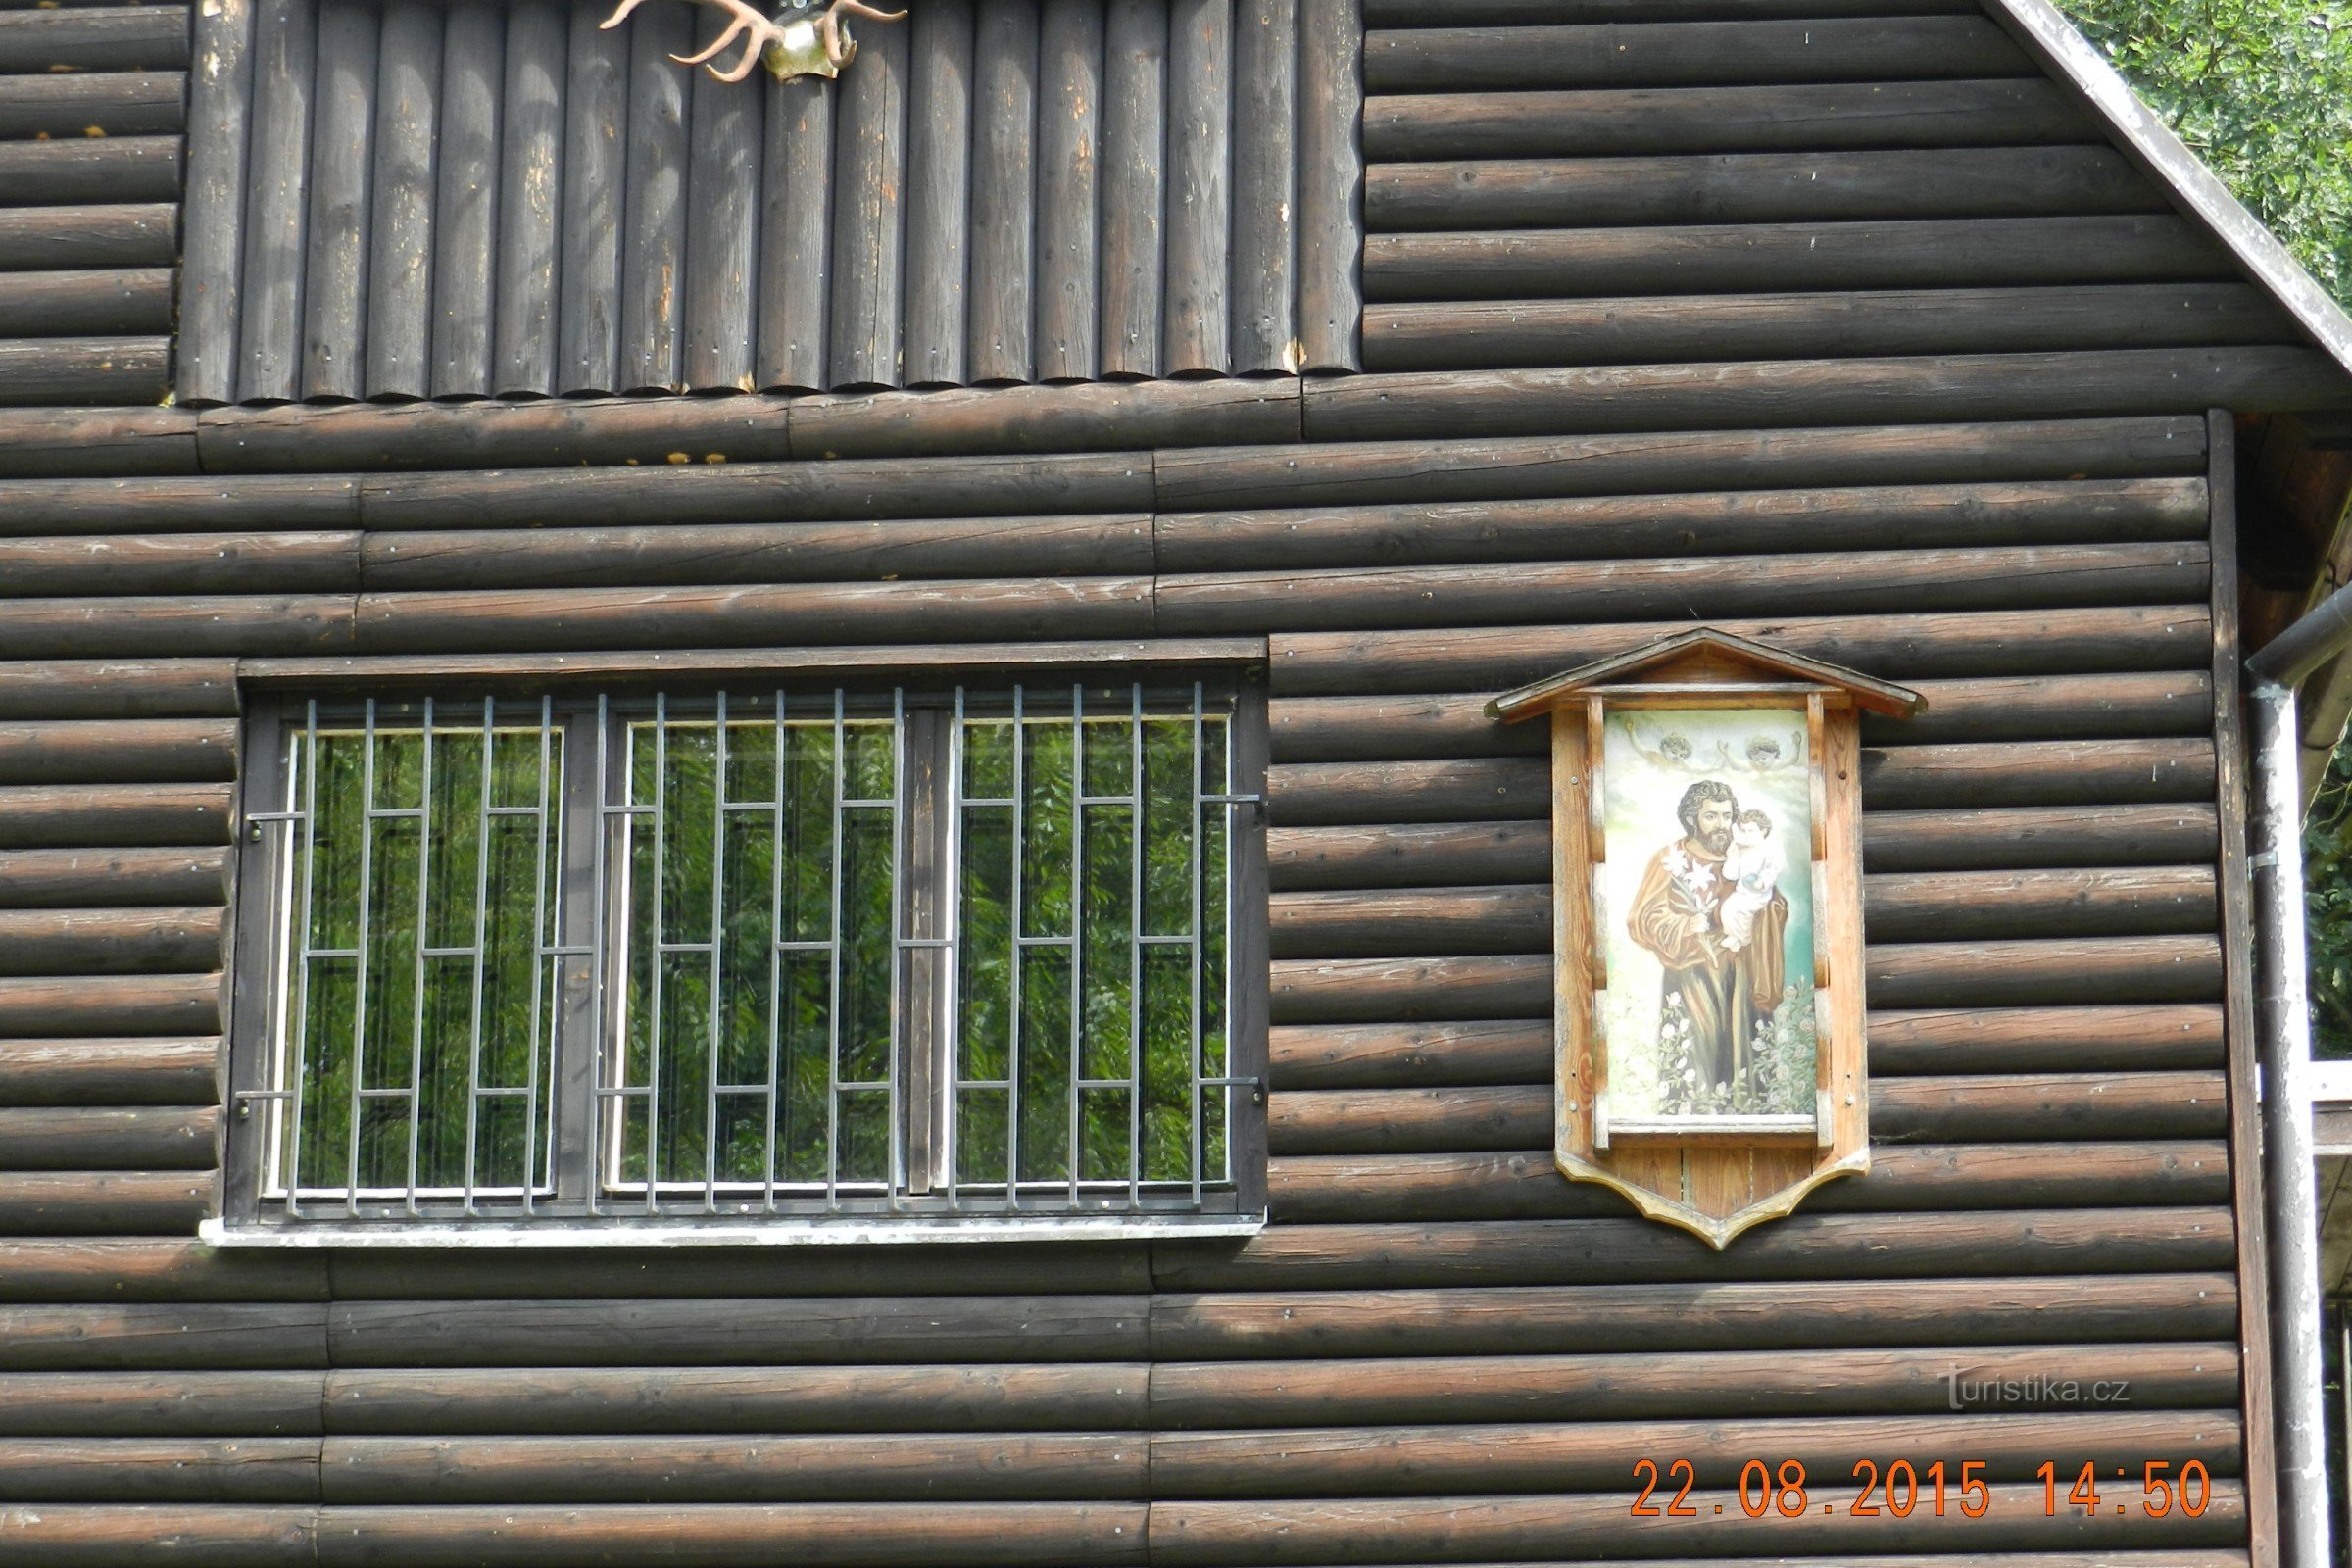 Грабова, Дубицко - охотничий домик св. Иосифа (экскурсия с коляской, жарка после